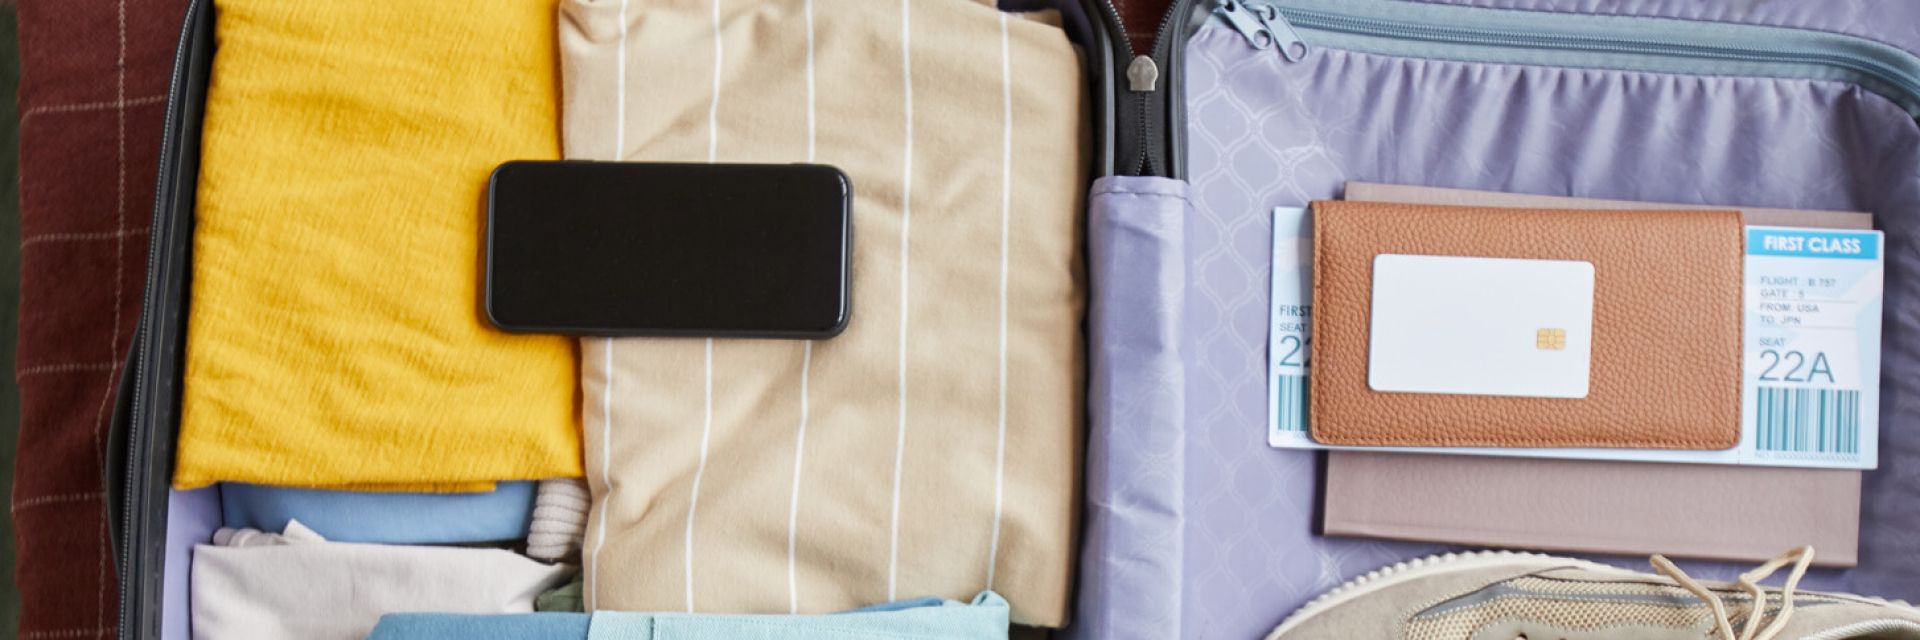 9 acessórios para viajar que não podem faltar na sua mala